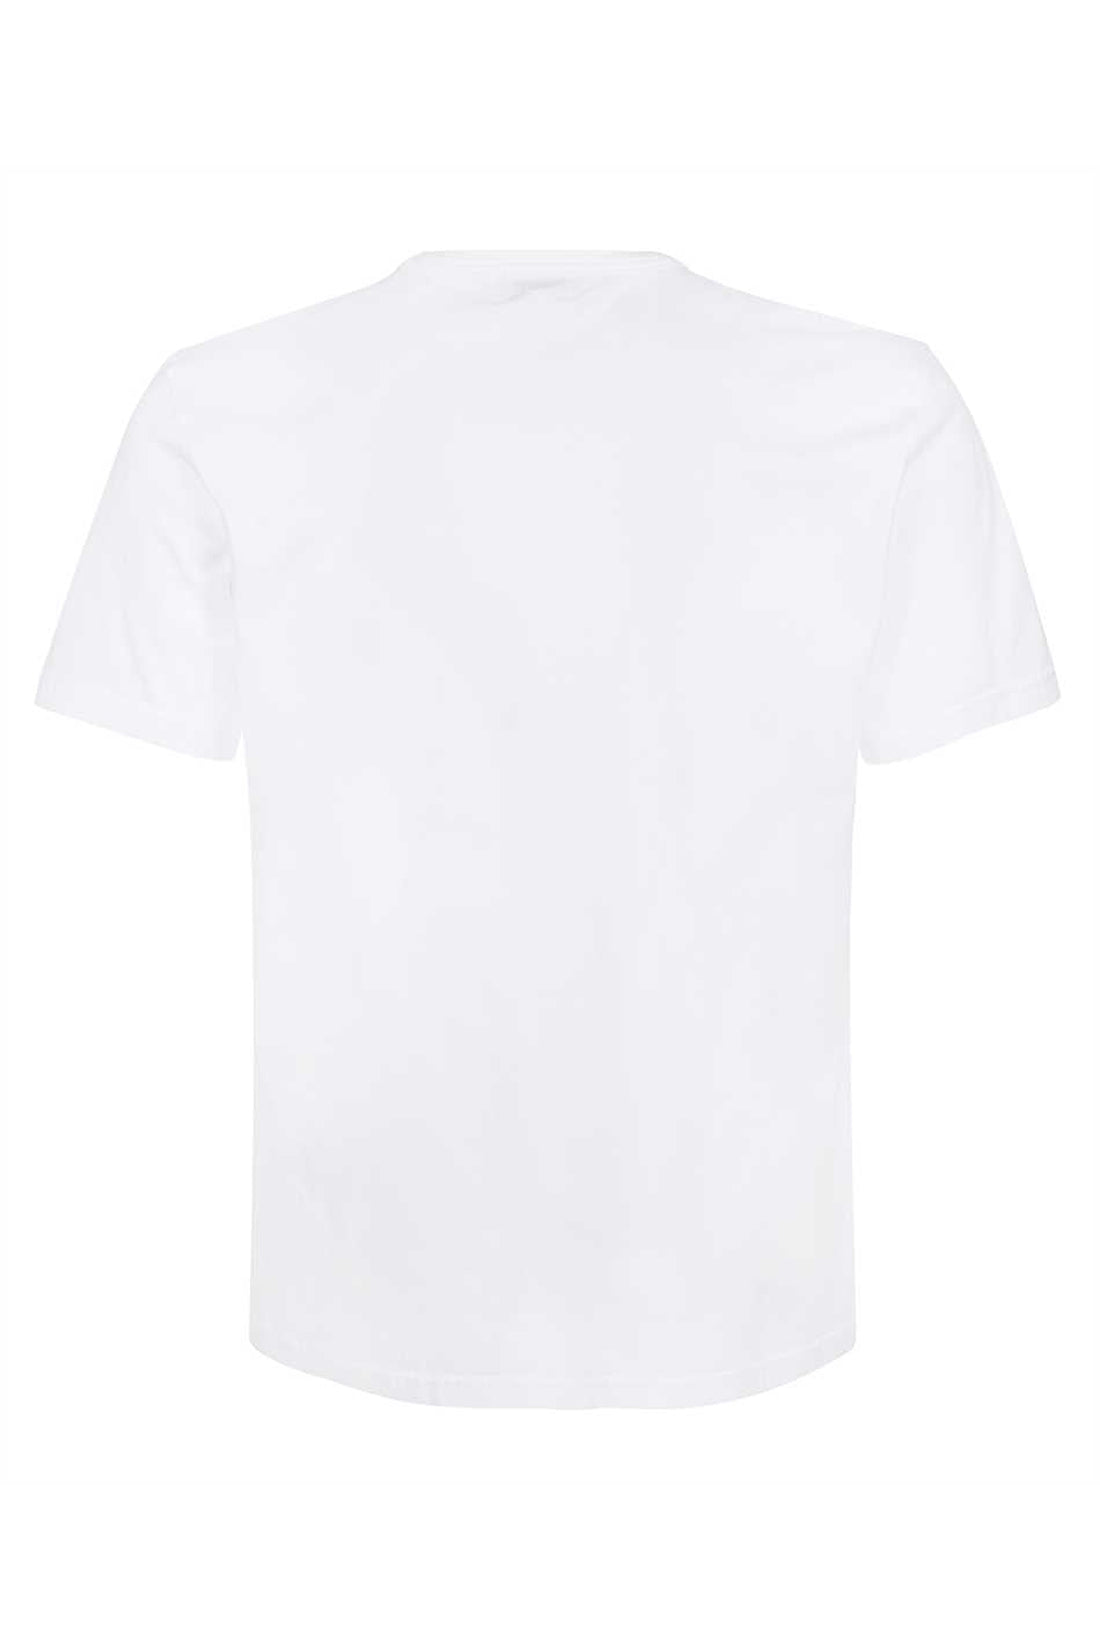 Woolrich-OUTLET-SALE-Cotton crew-neck T-shirt-ARCHIVIST